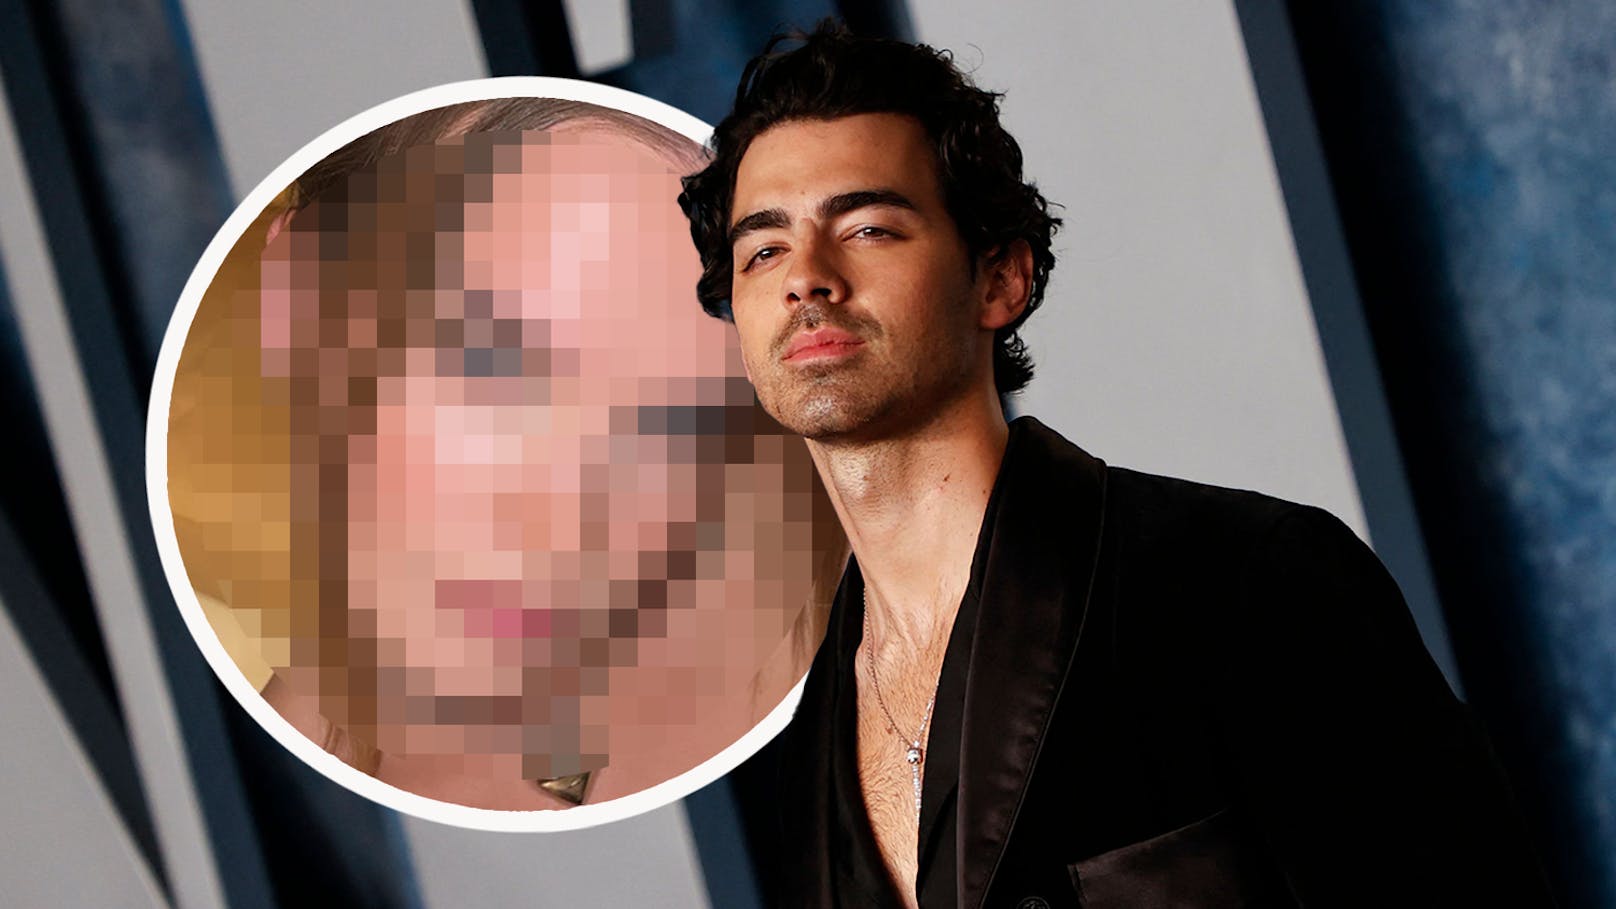 Joe Jonas wird beim Knutschen mit Model erwischt